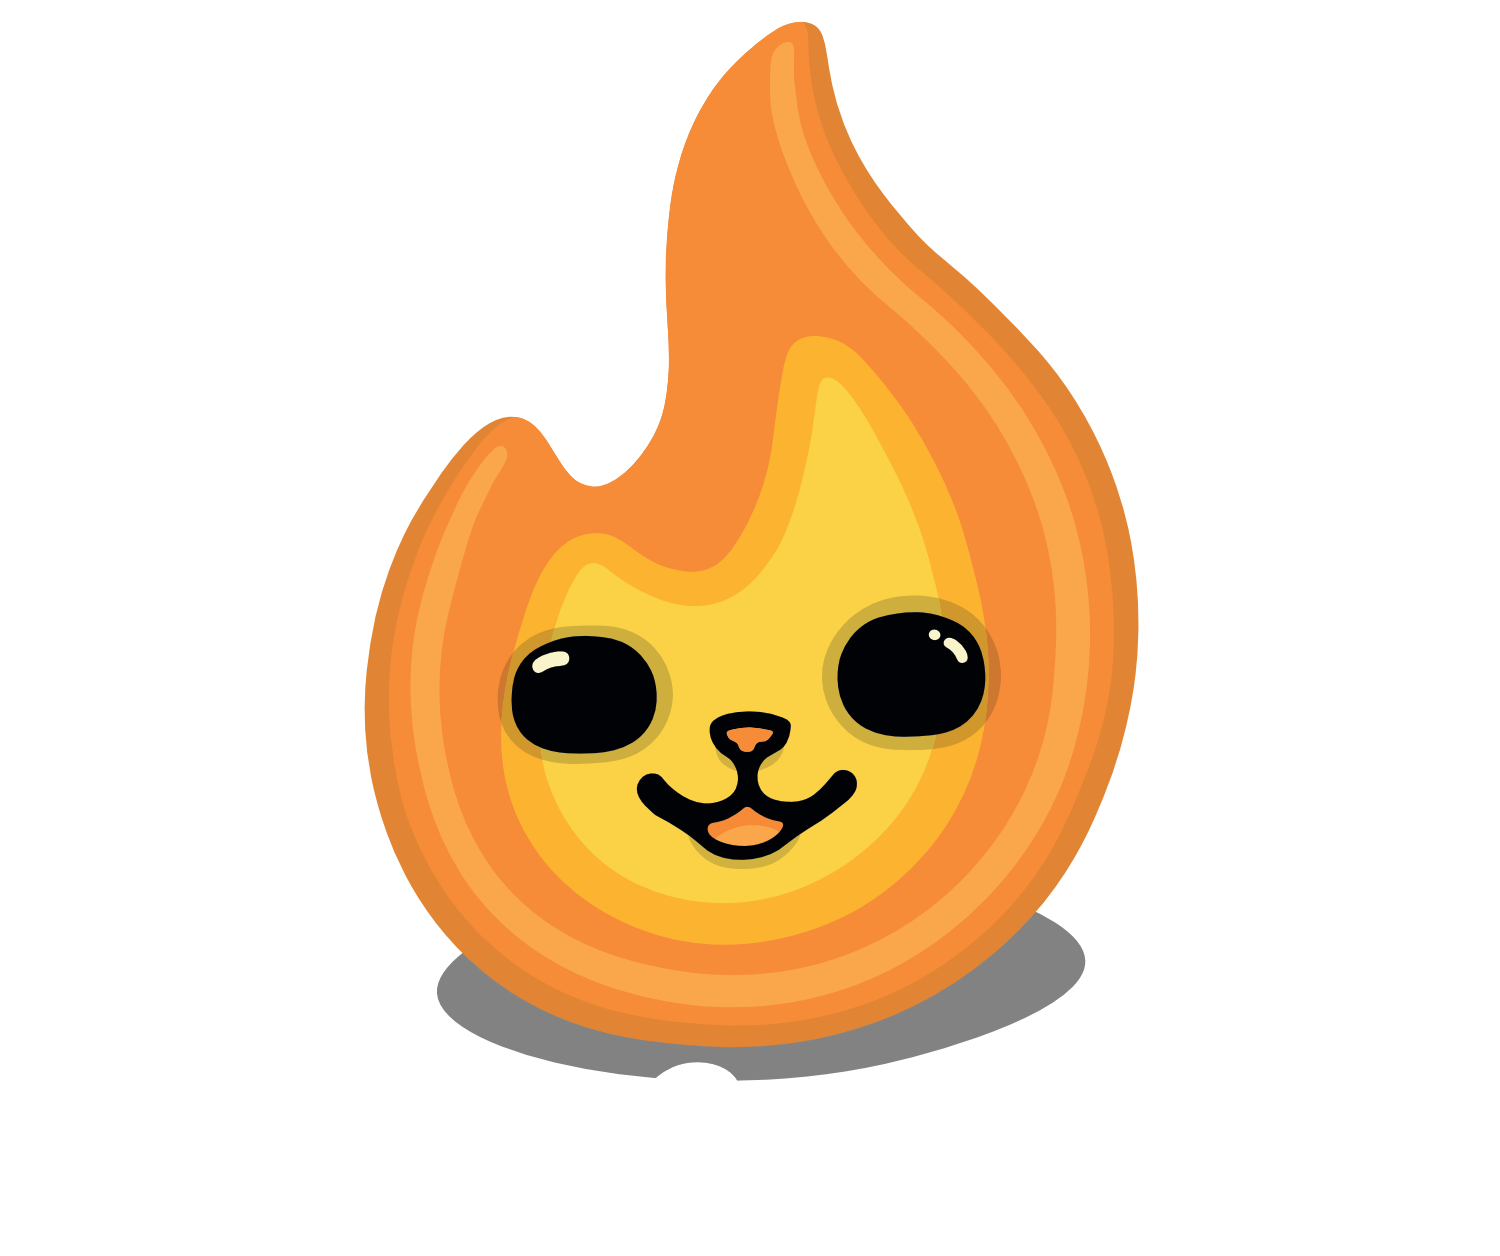 CinderCatGames